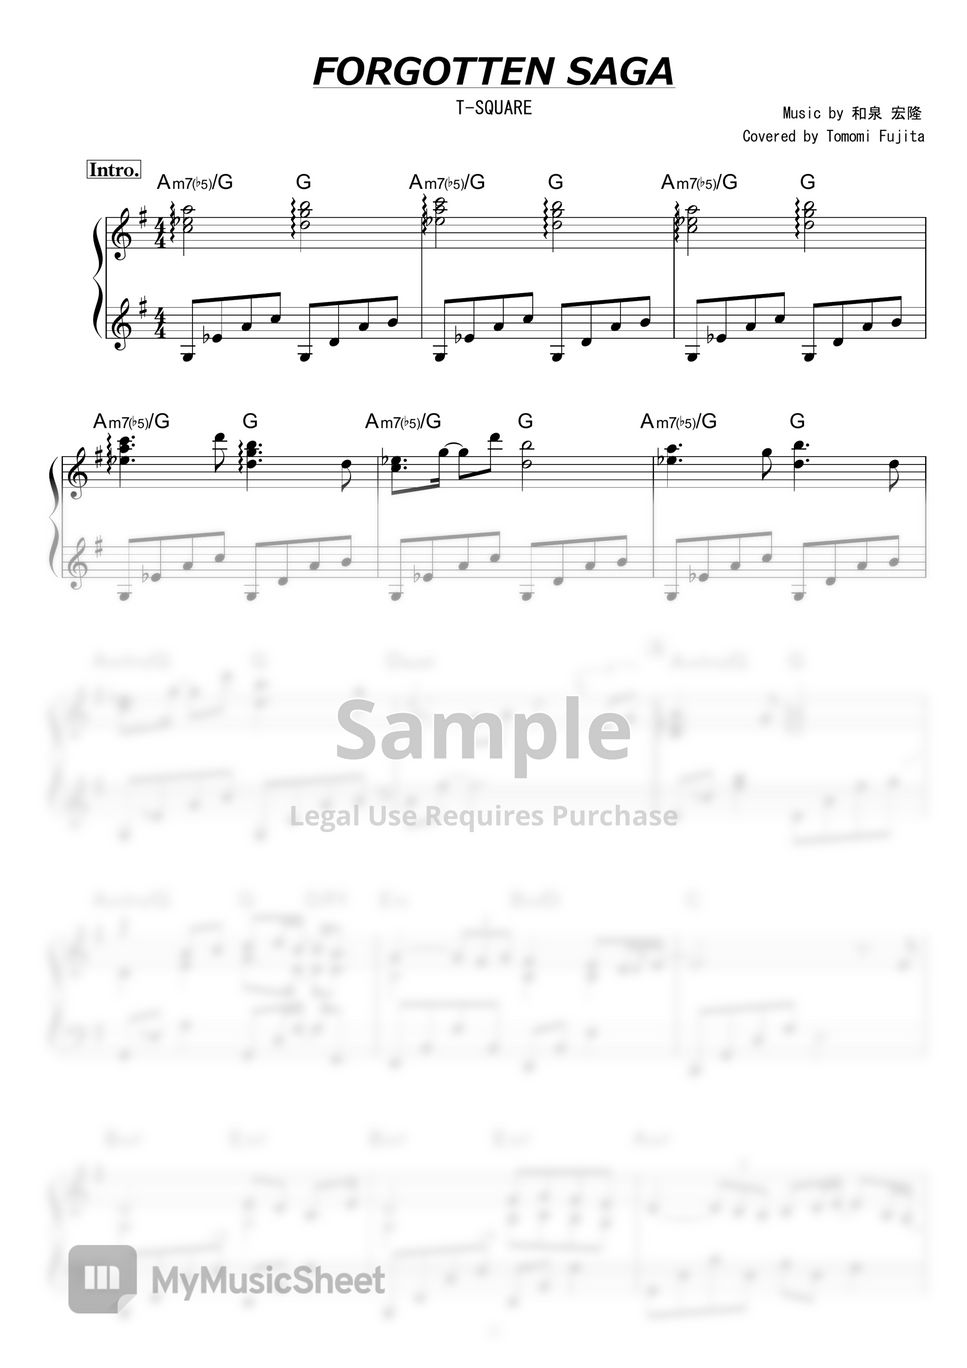 T-SQUARE - Forgotten Saga by piano*score